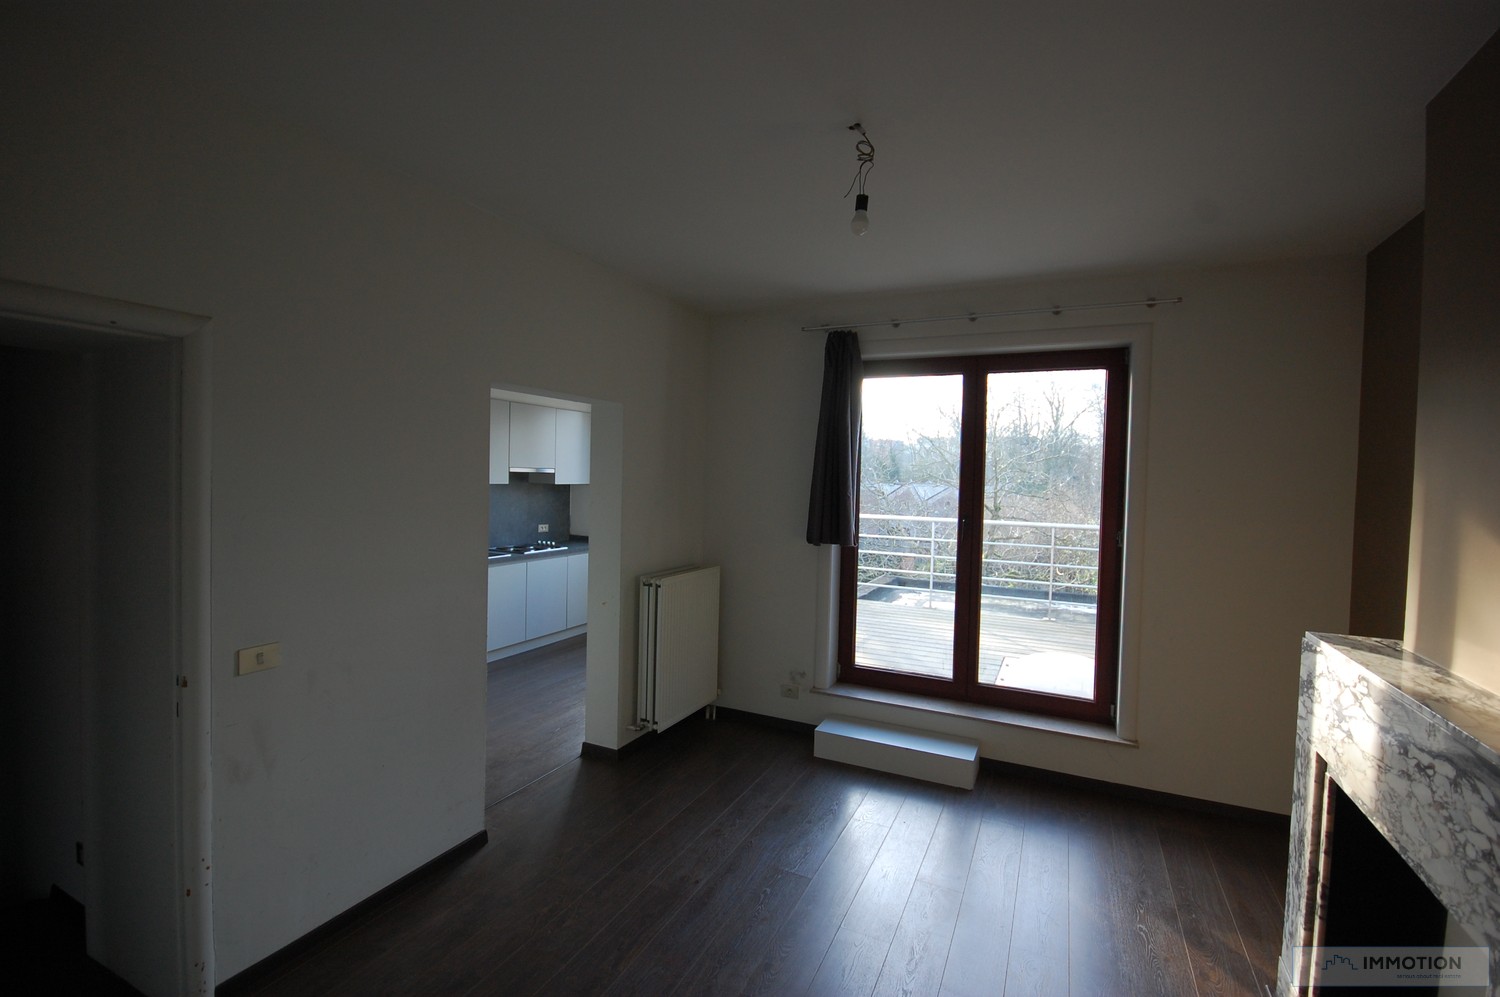 Duplex appartement met terras aan de Gentpoort